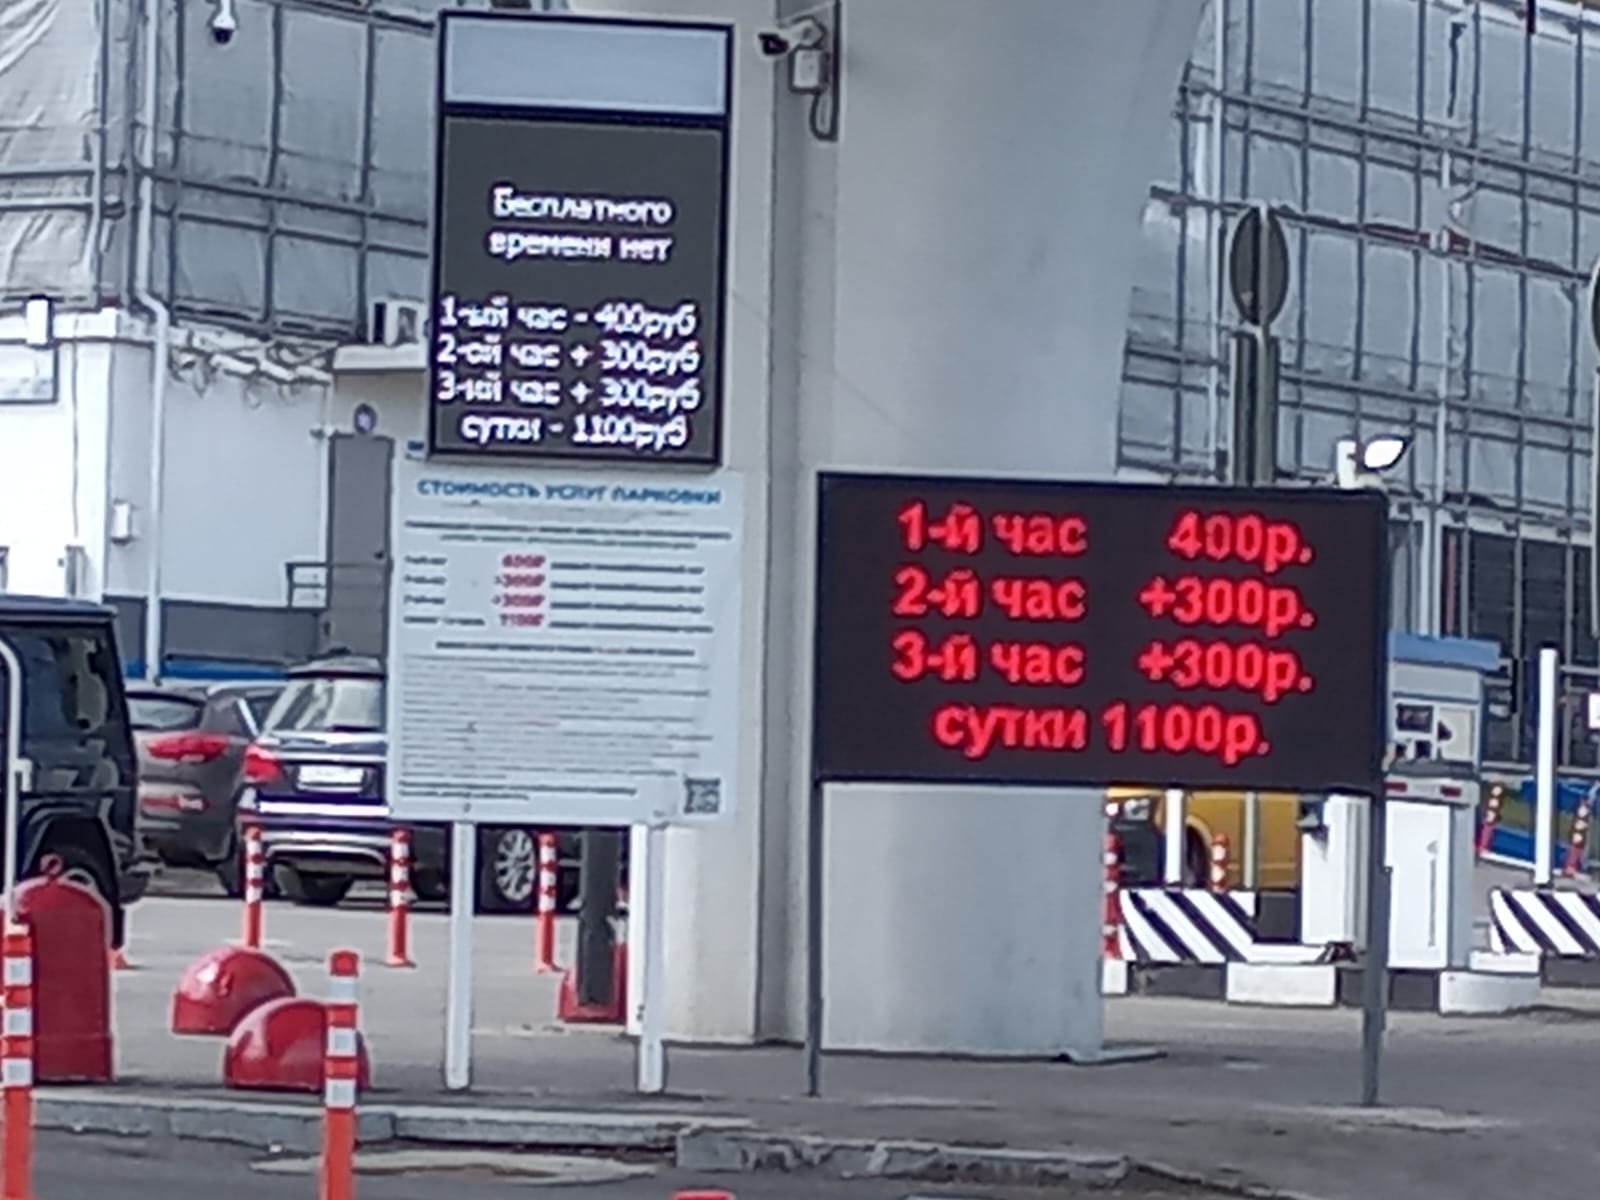 Изменение тарифа парковки на территории аэропорта Внуково | Новость